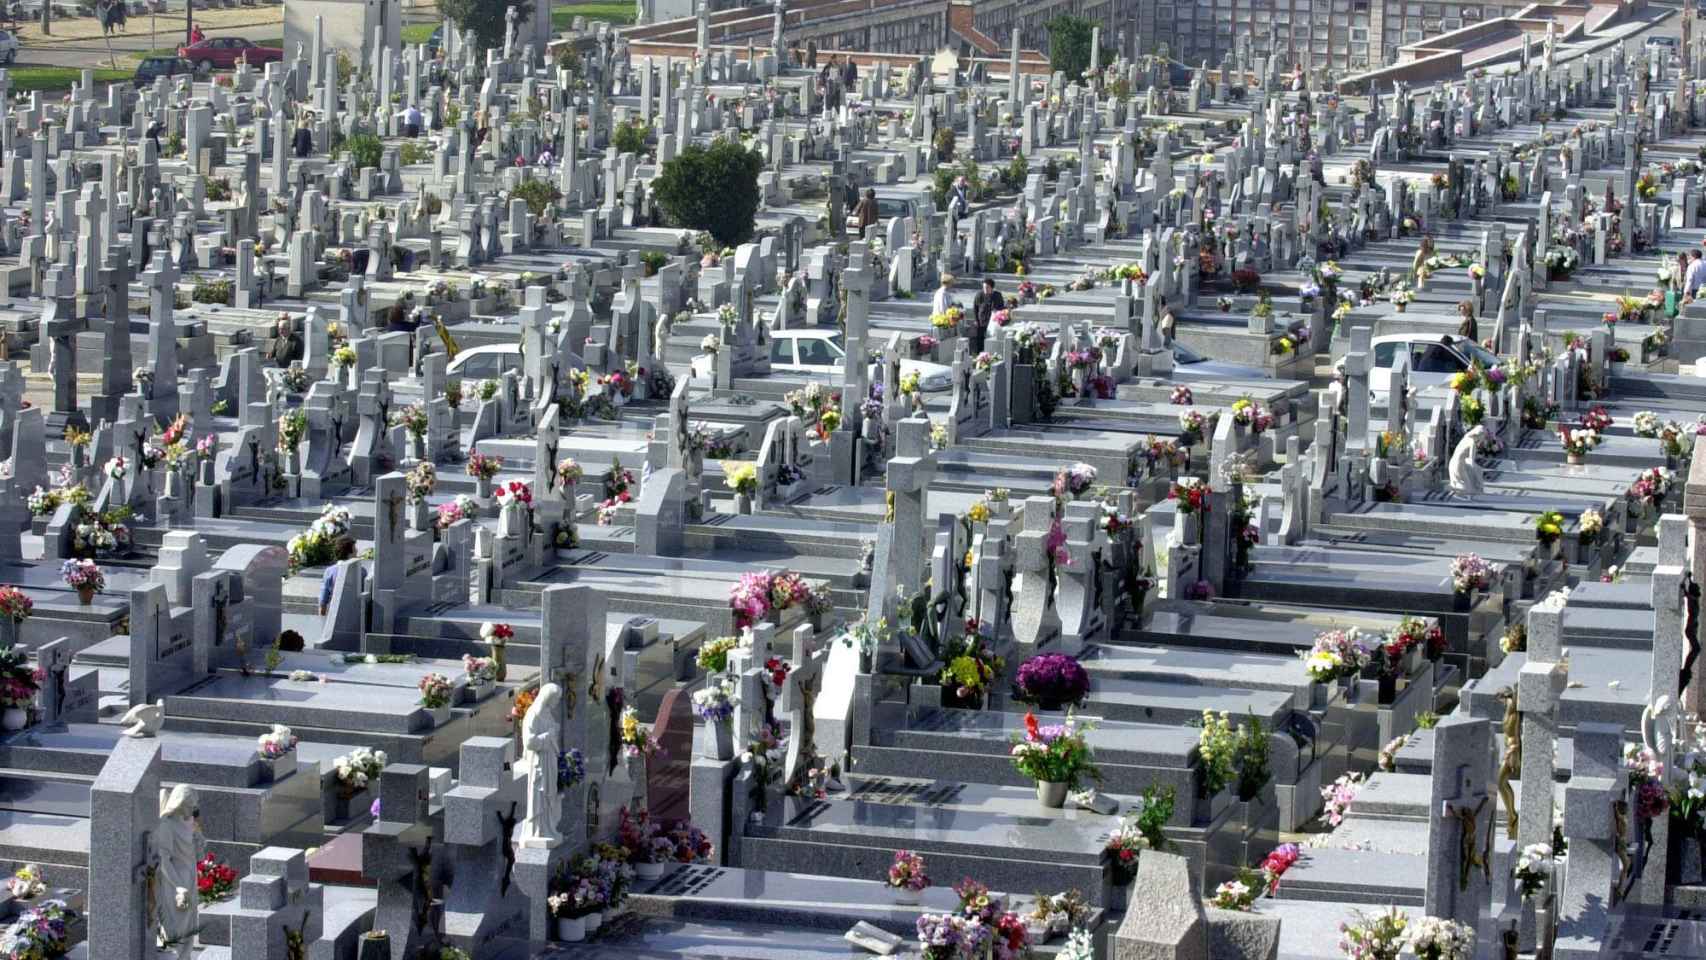 El cementerio de La Almudena es el más popular de Madrid